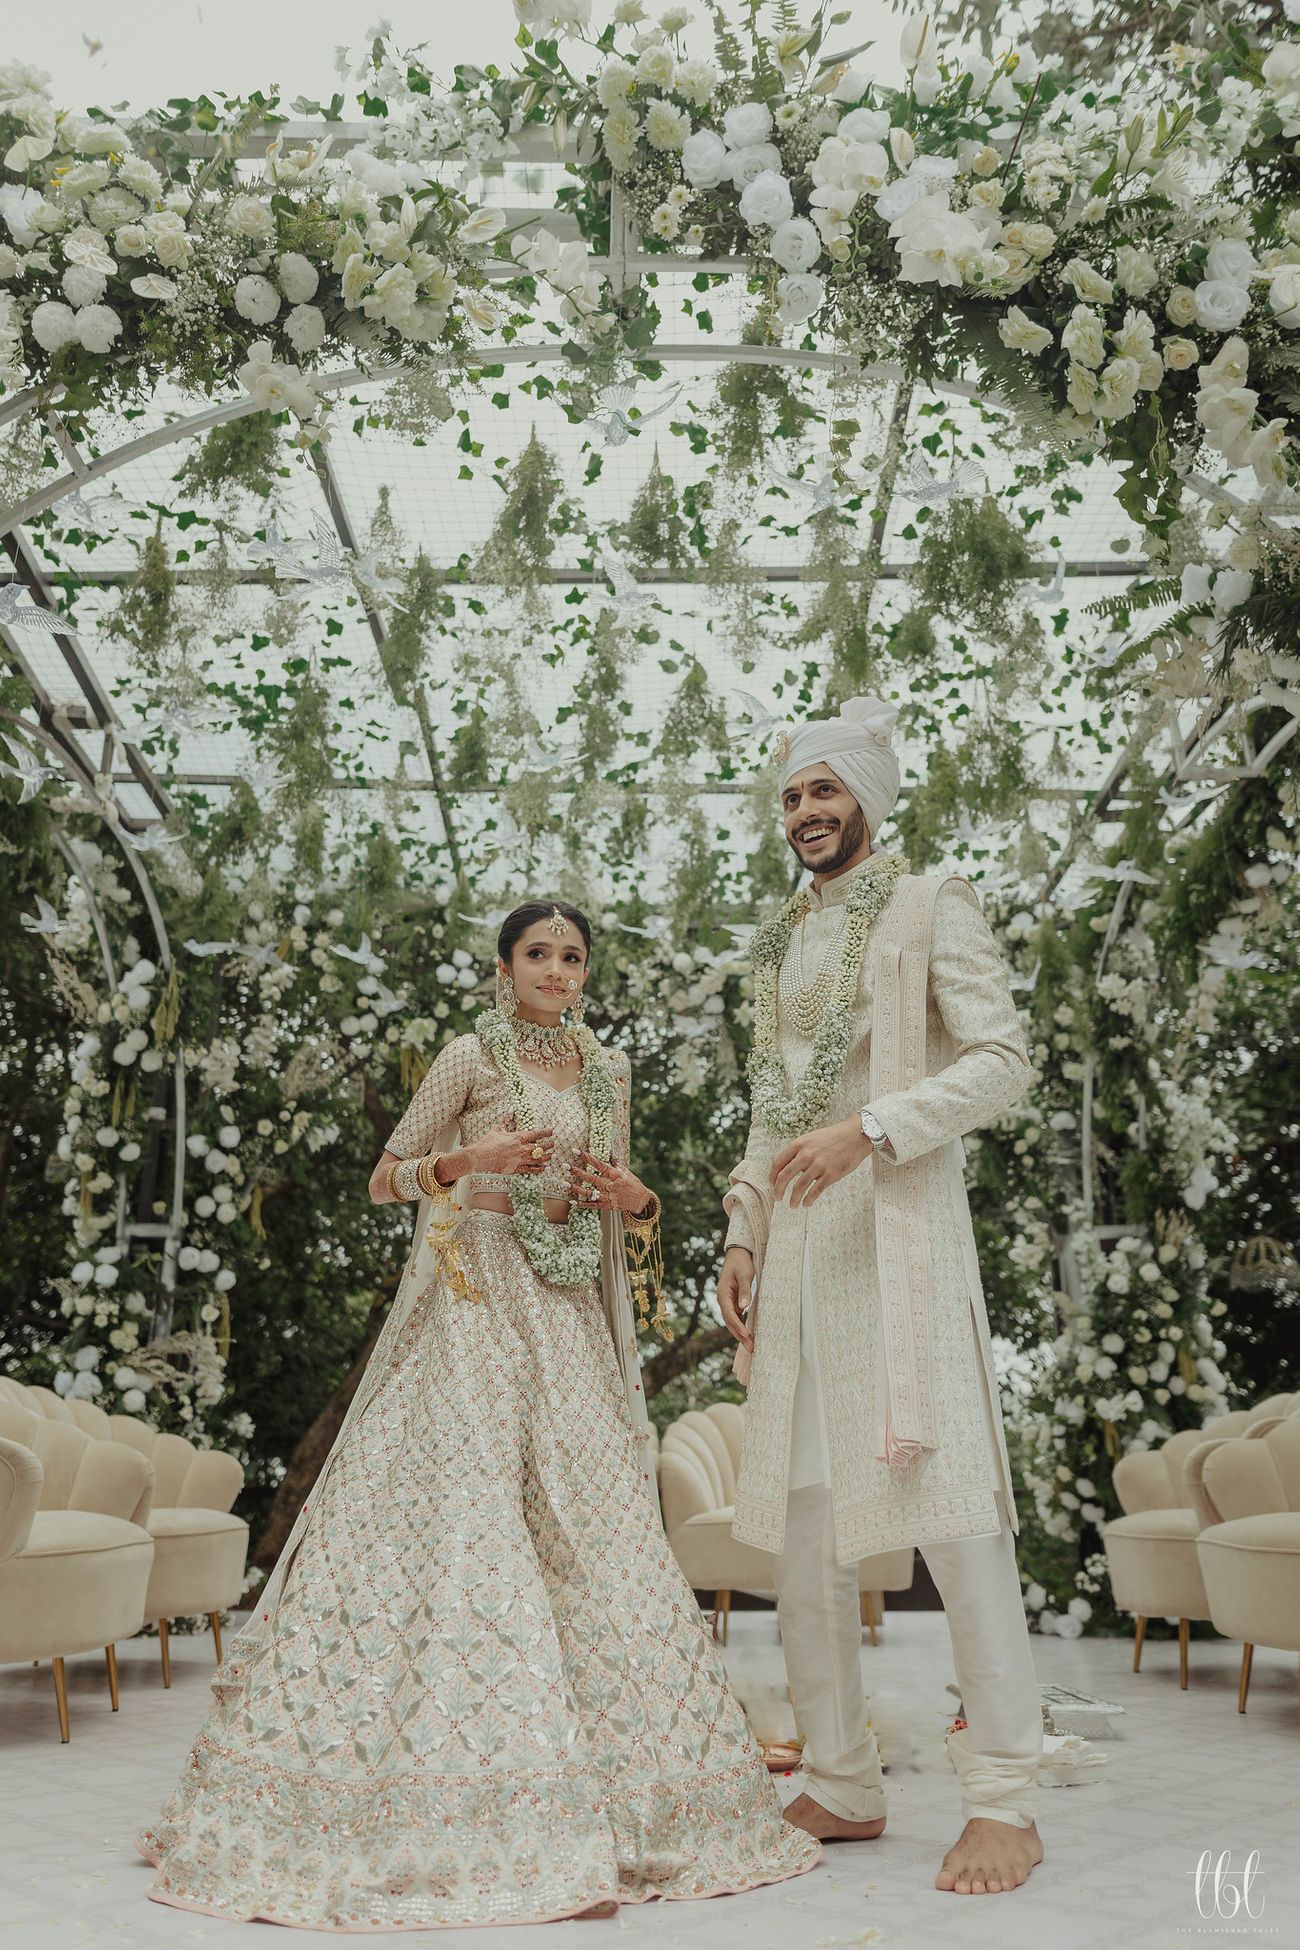 Beautiful Mahabaleshwar Wedding With A White & Gold Aesthetic | WedMeGood